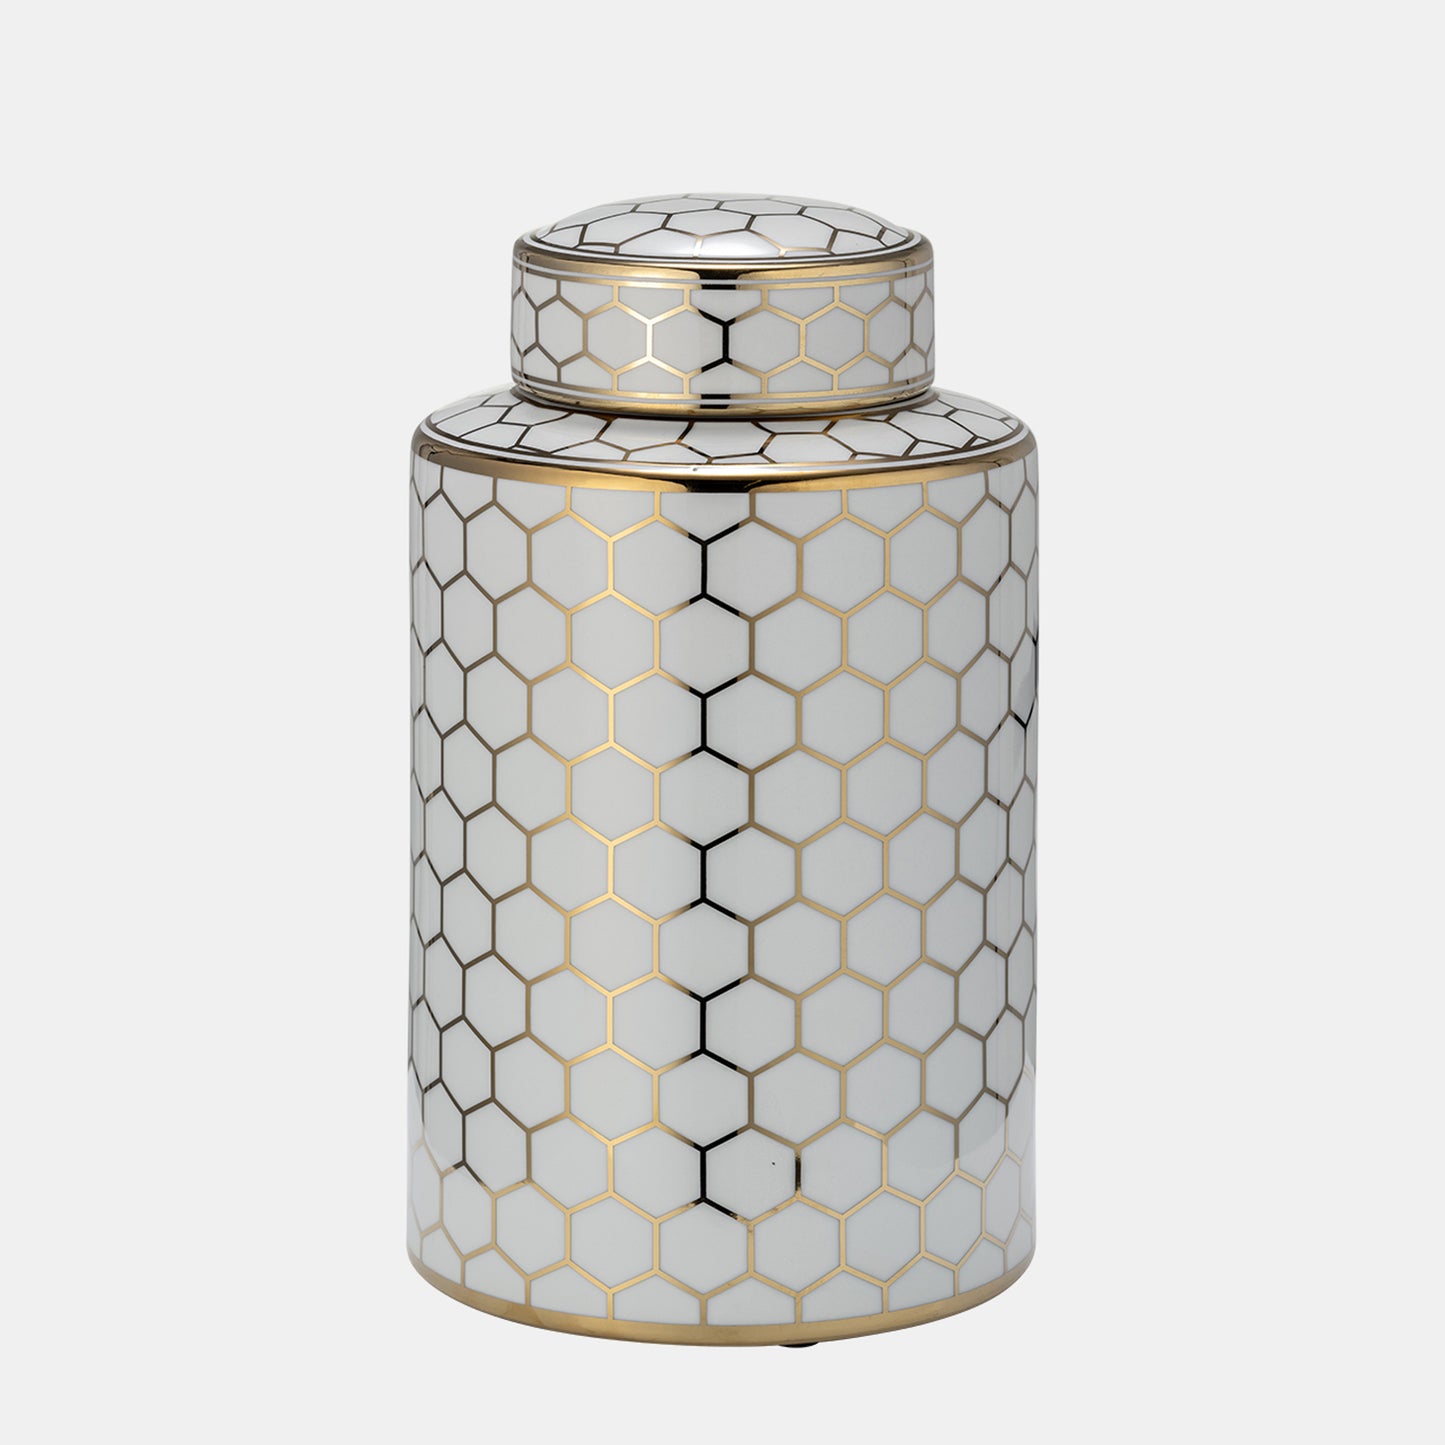 12" Cer,  Honeycomb Jar W/ Lid, Gold